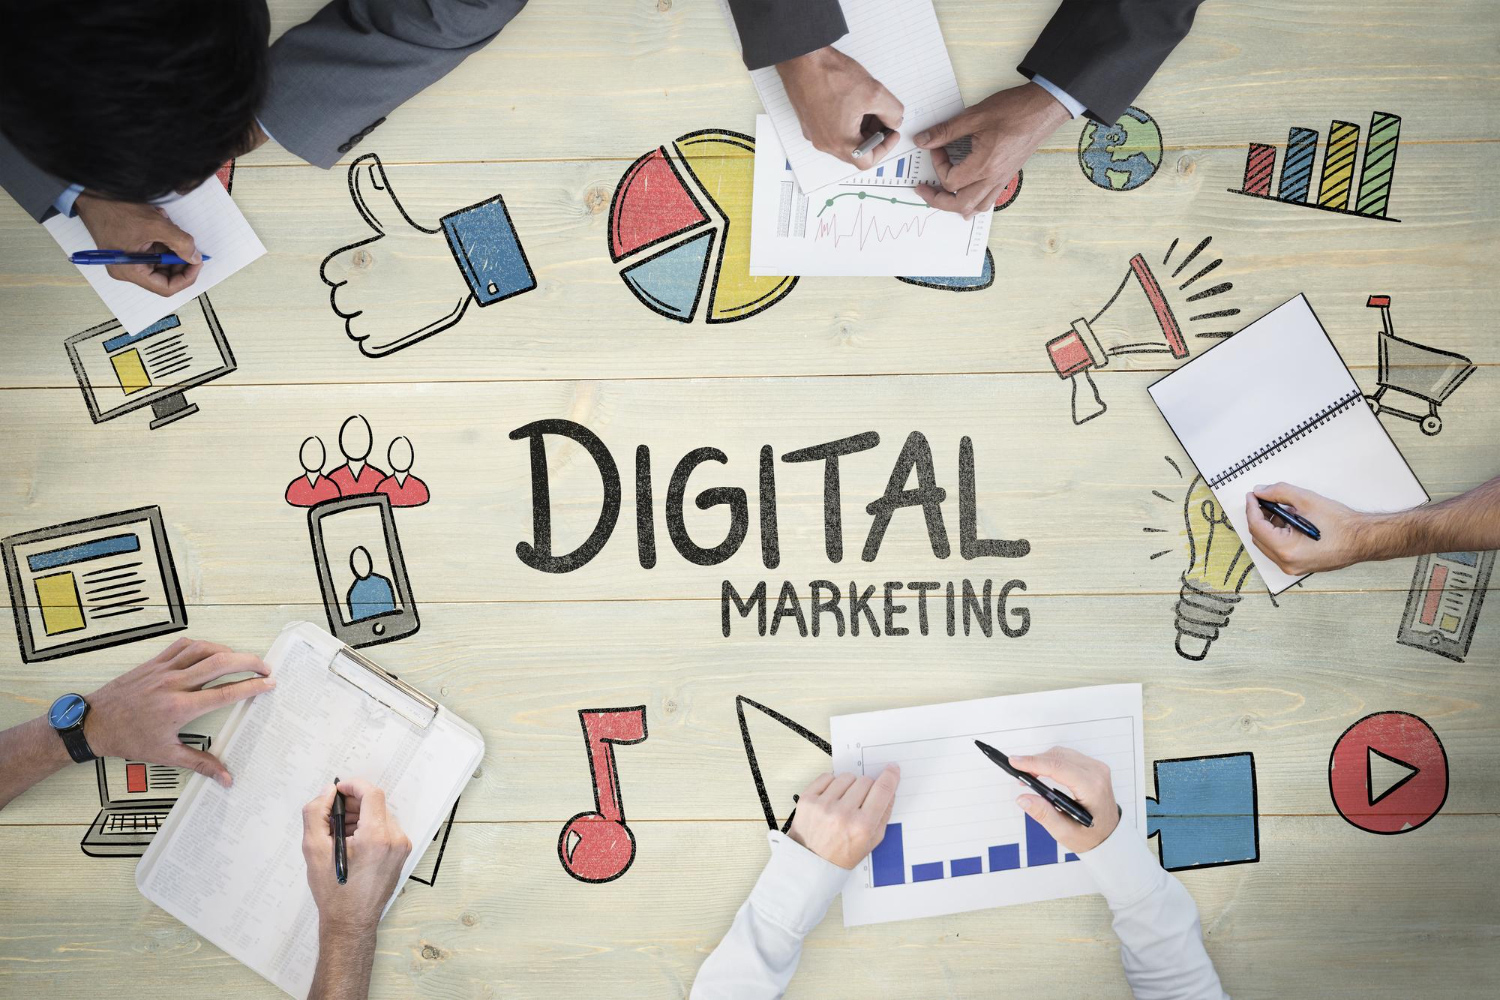 Digital Marketing : 7 Key Components of a Successful Digital Marketing Strategy